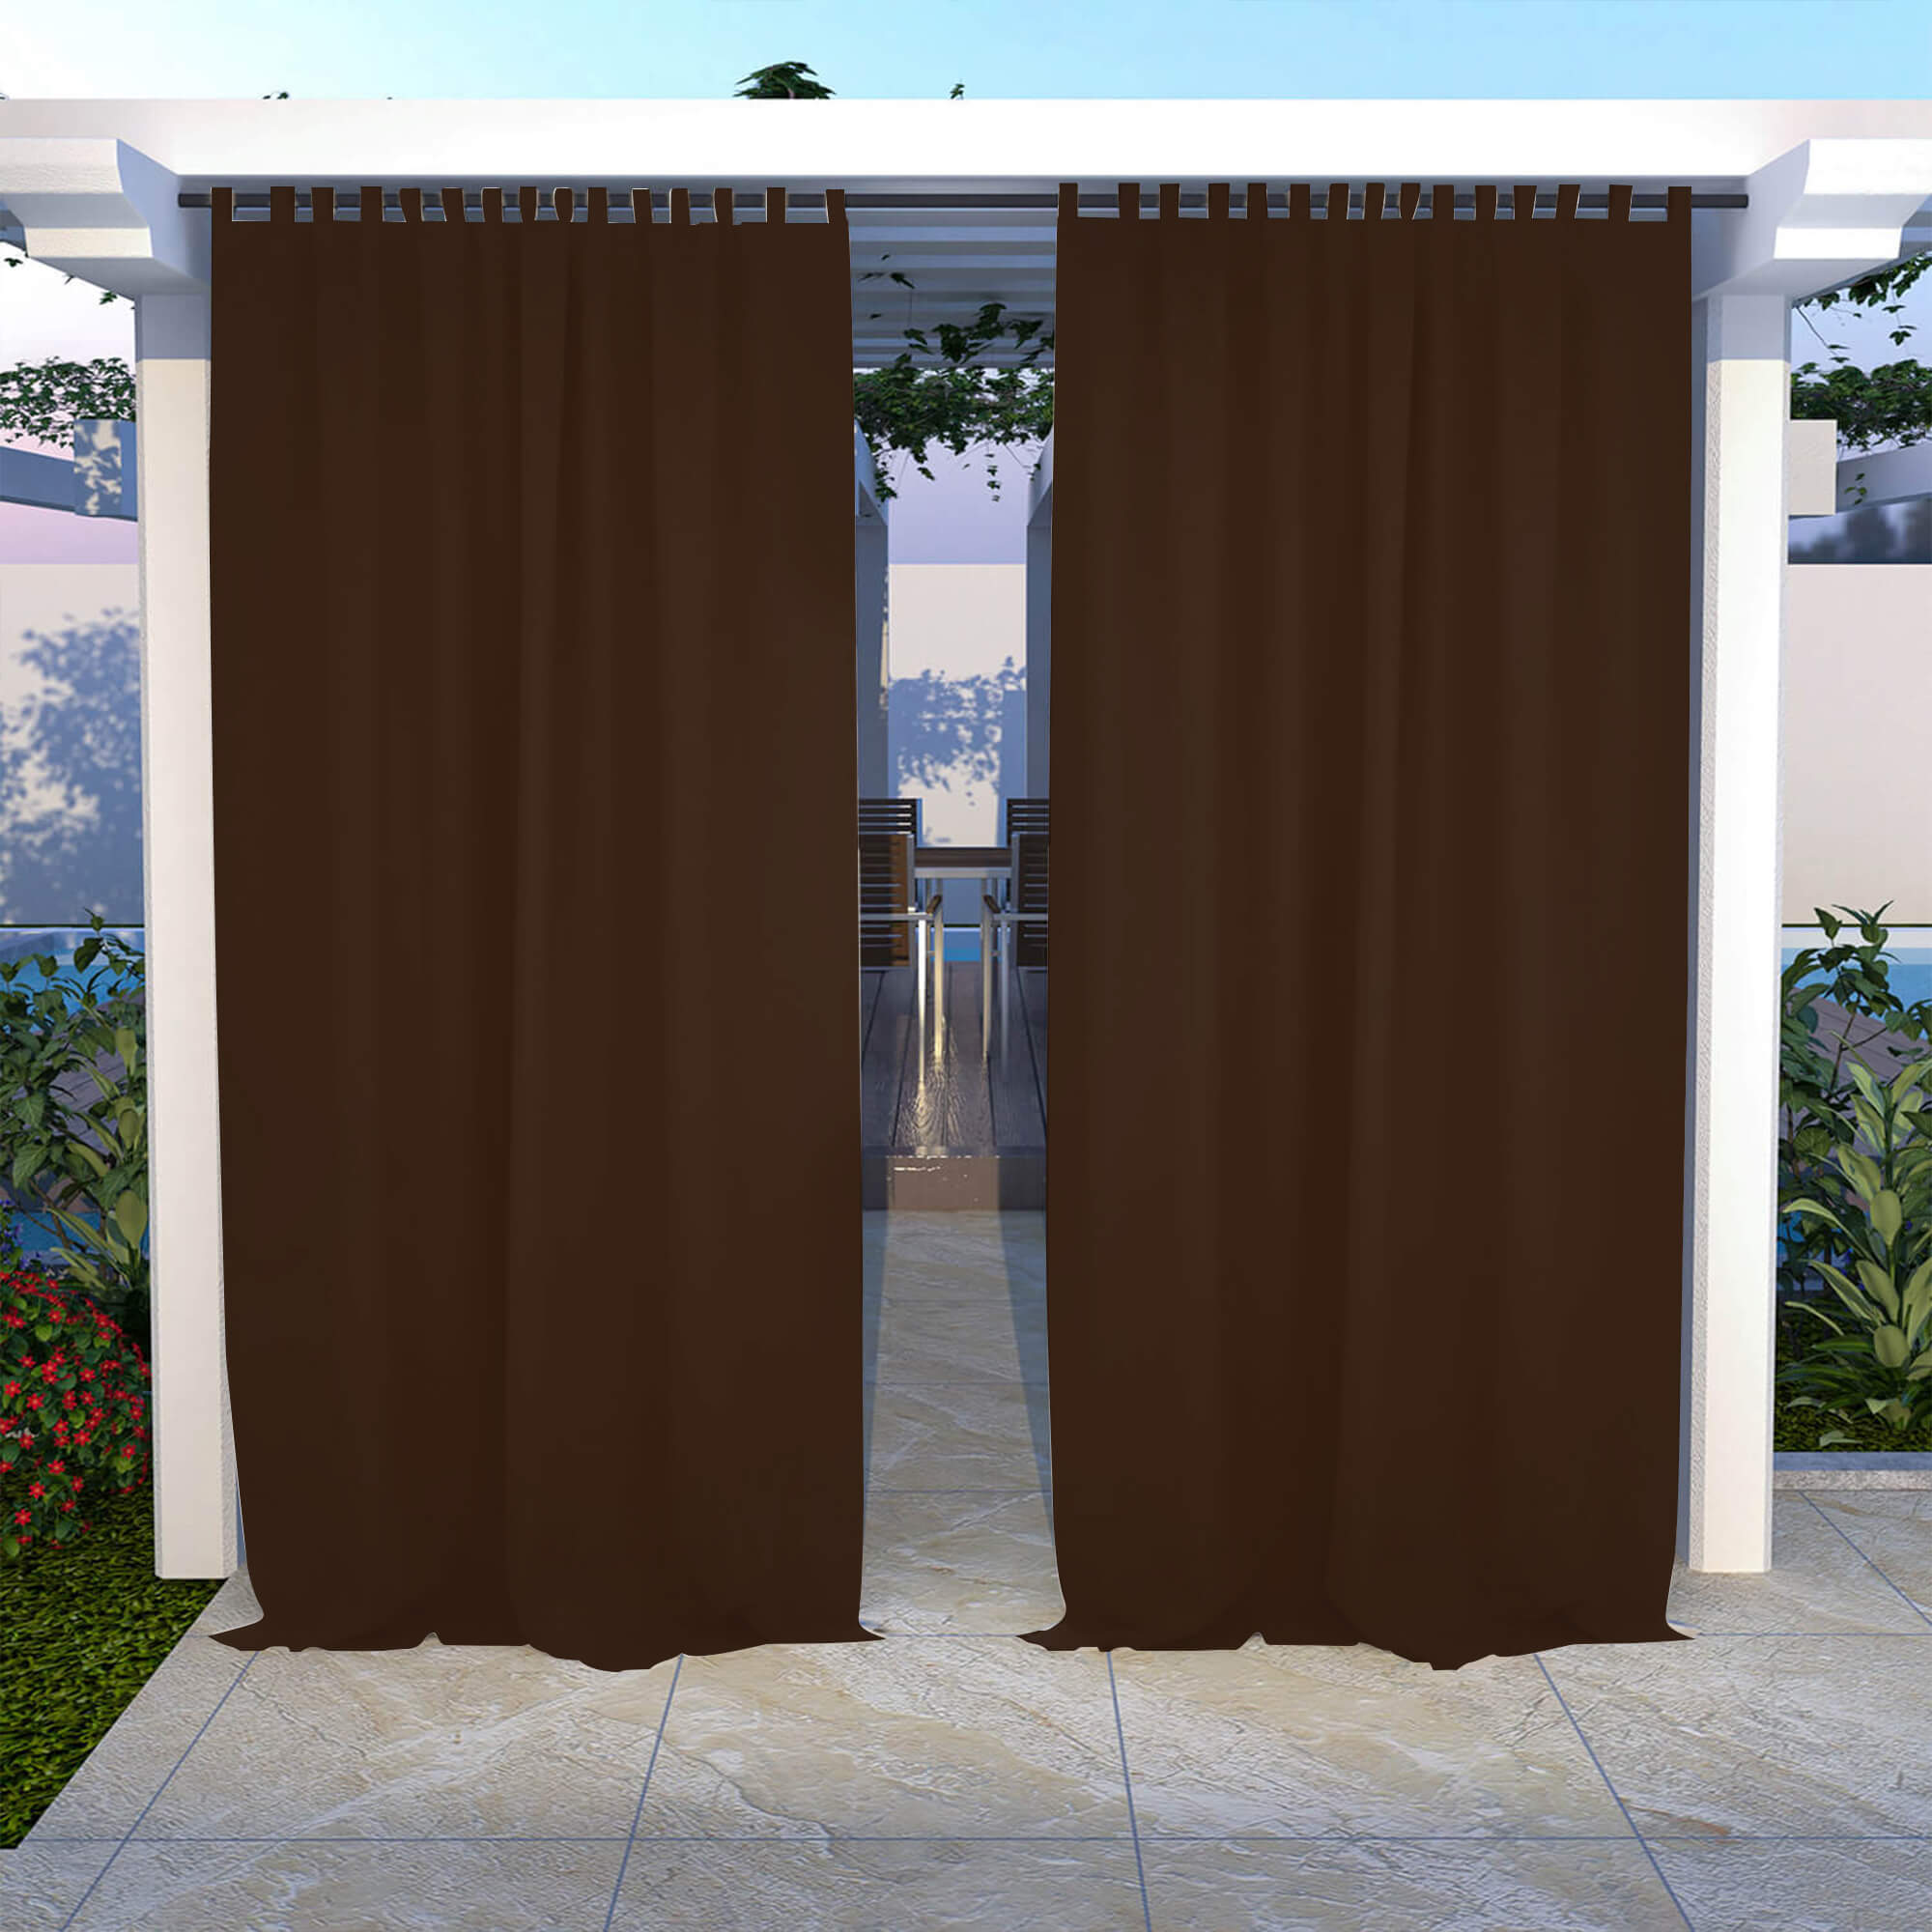 Sunthus Outdoor Curtains Waterproof Tab Top 1 Panel - Dark Coffee